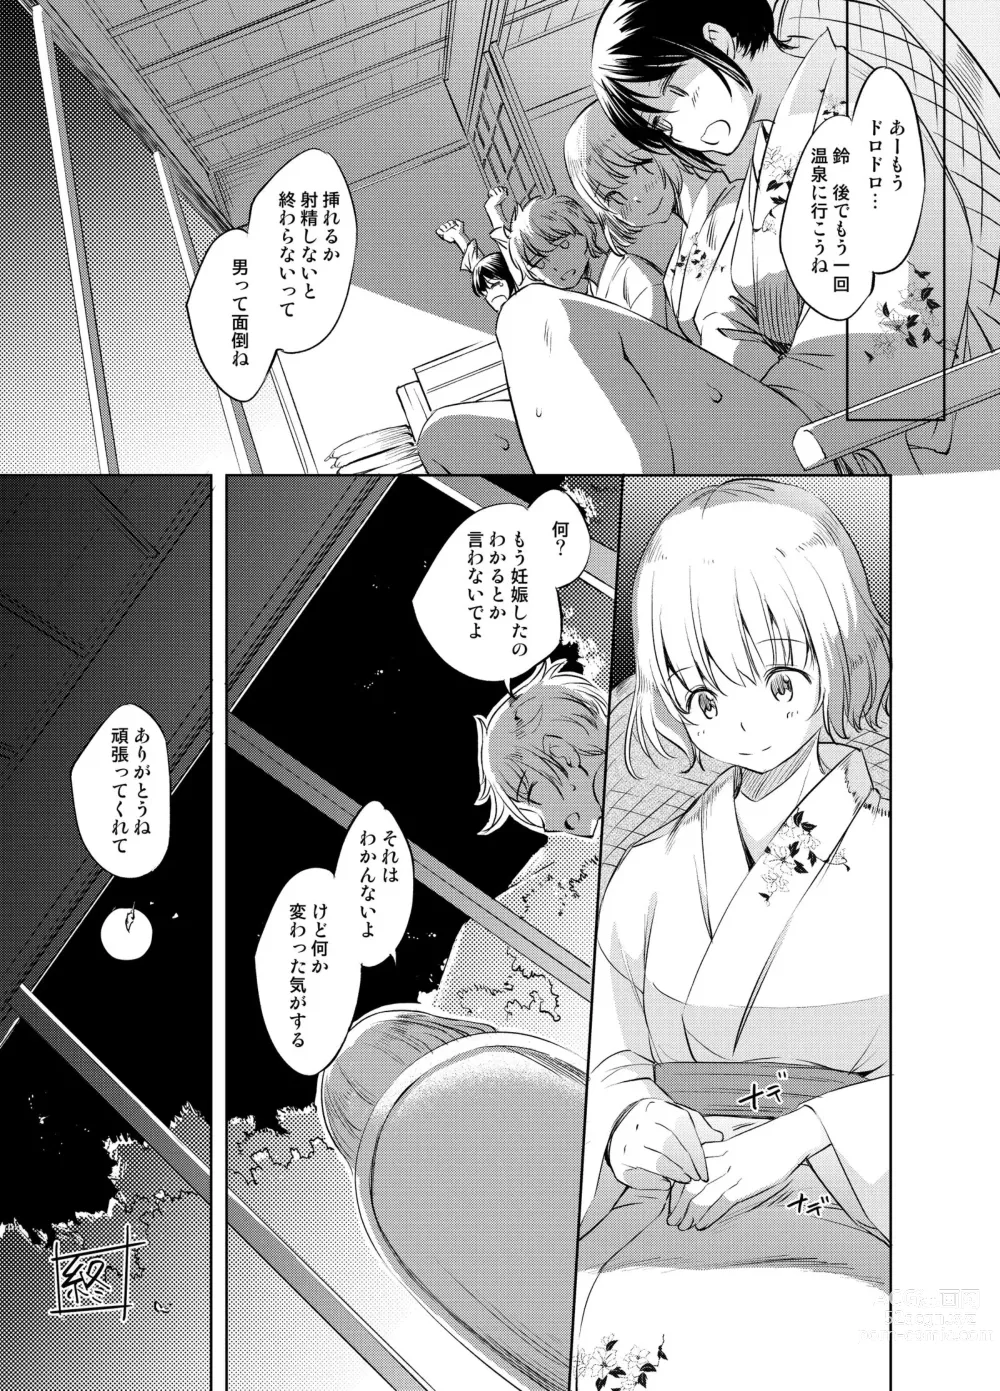 Page 9 of doujinshi Shun Suzu Manga